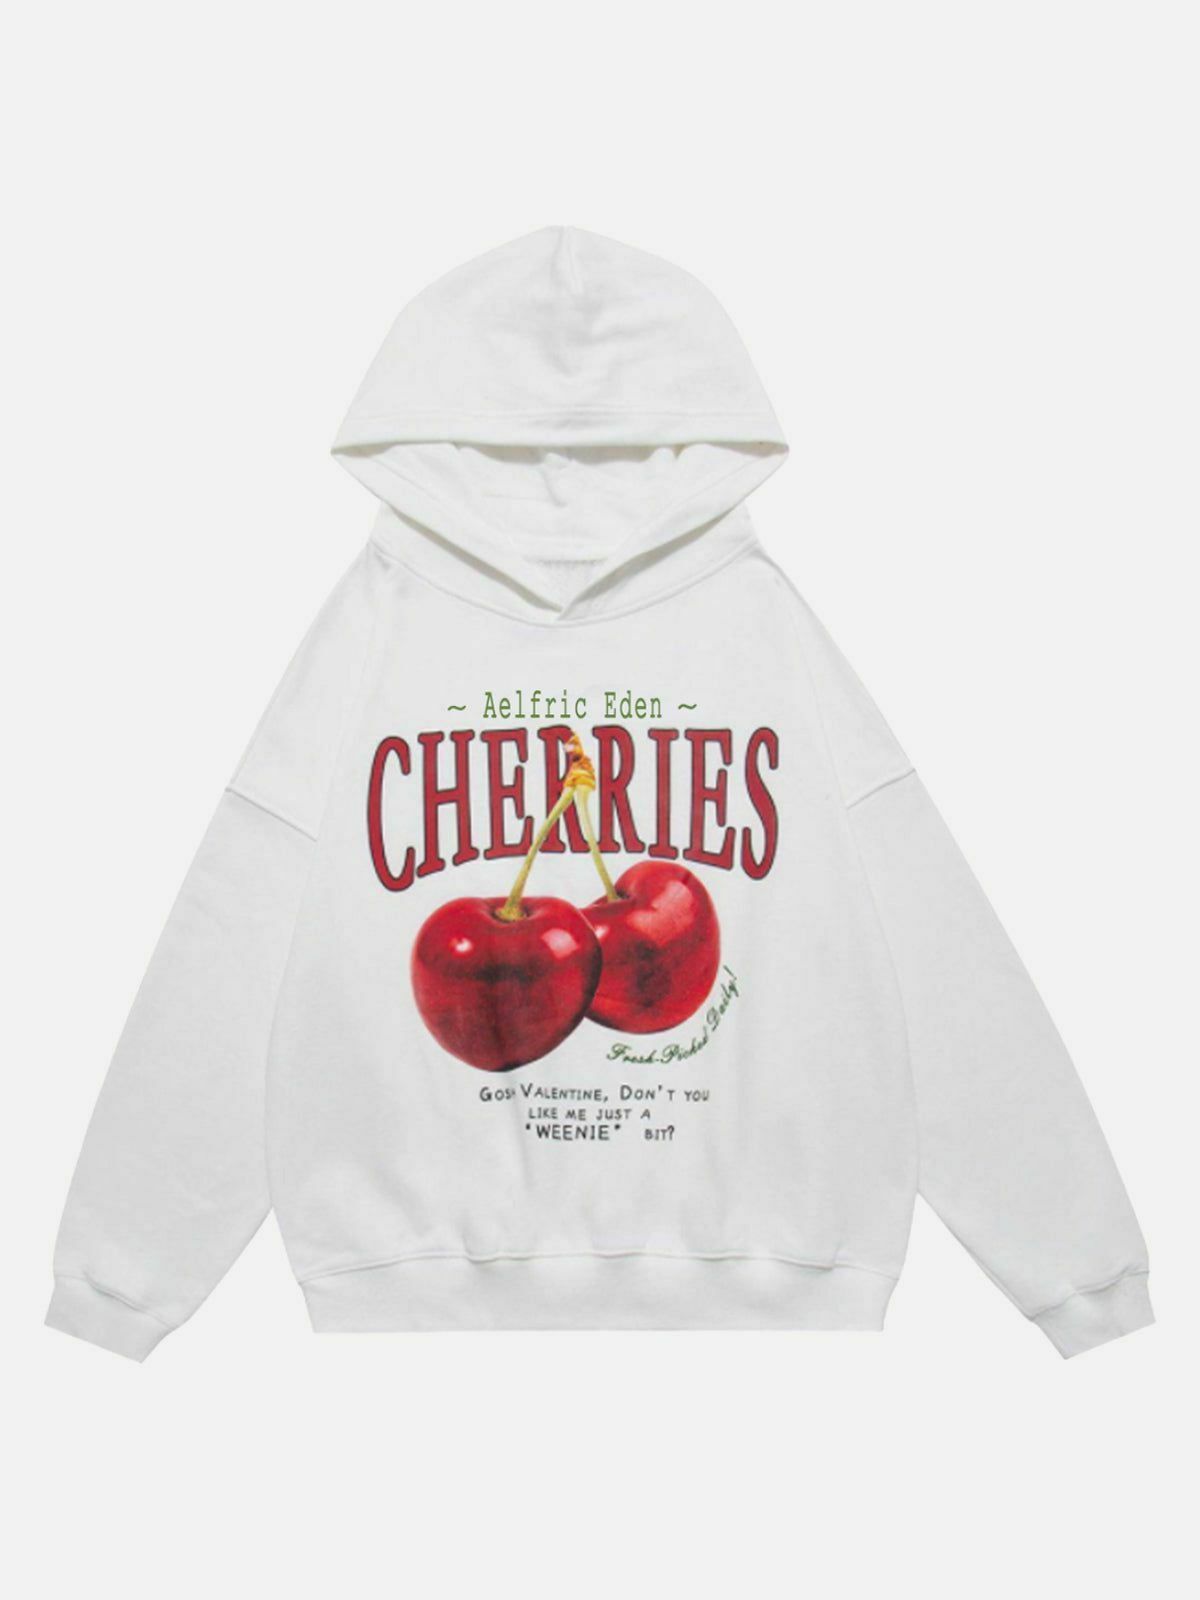 chic cherries hoodie   youthful & trendy streetwear 6268